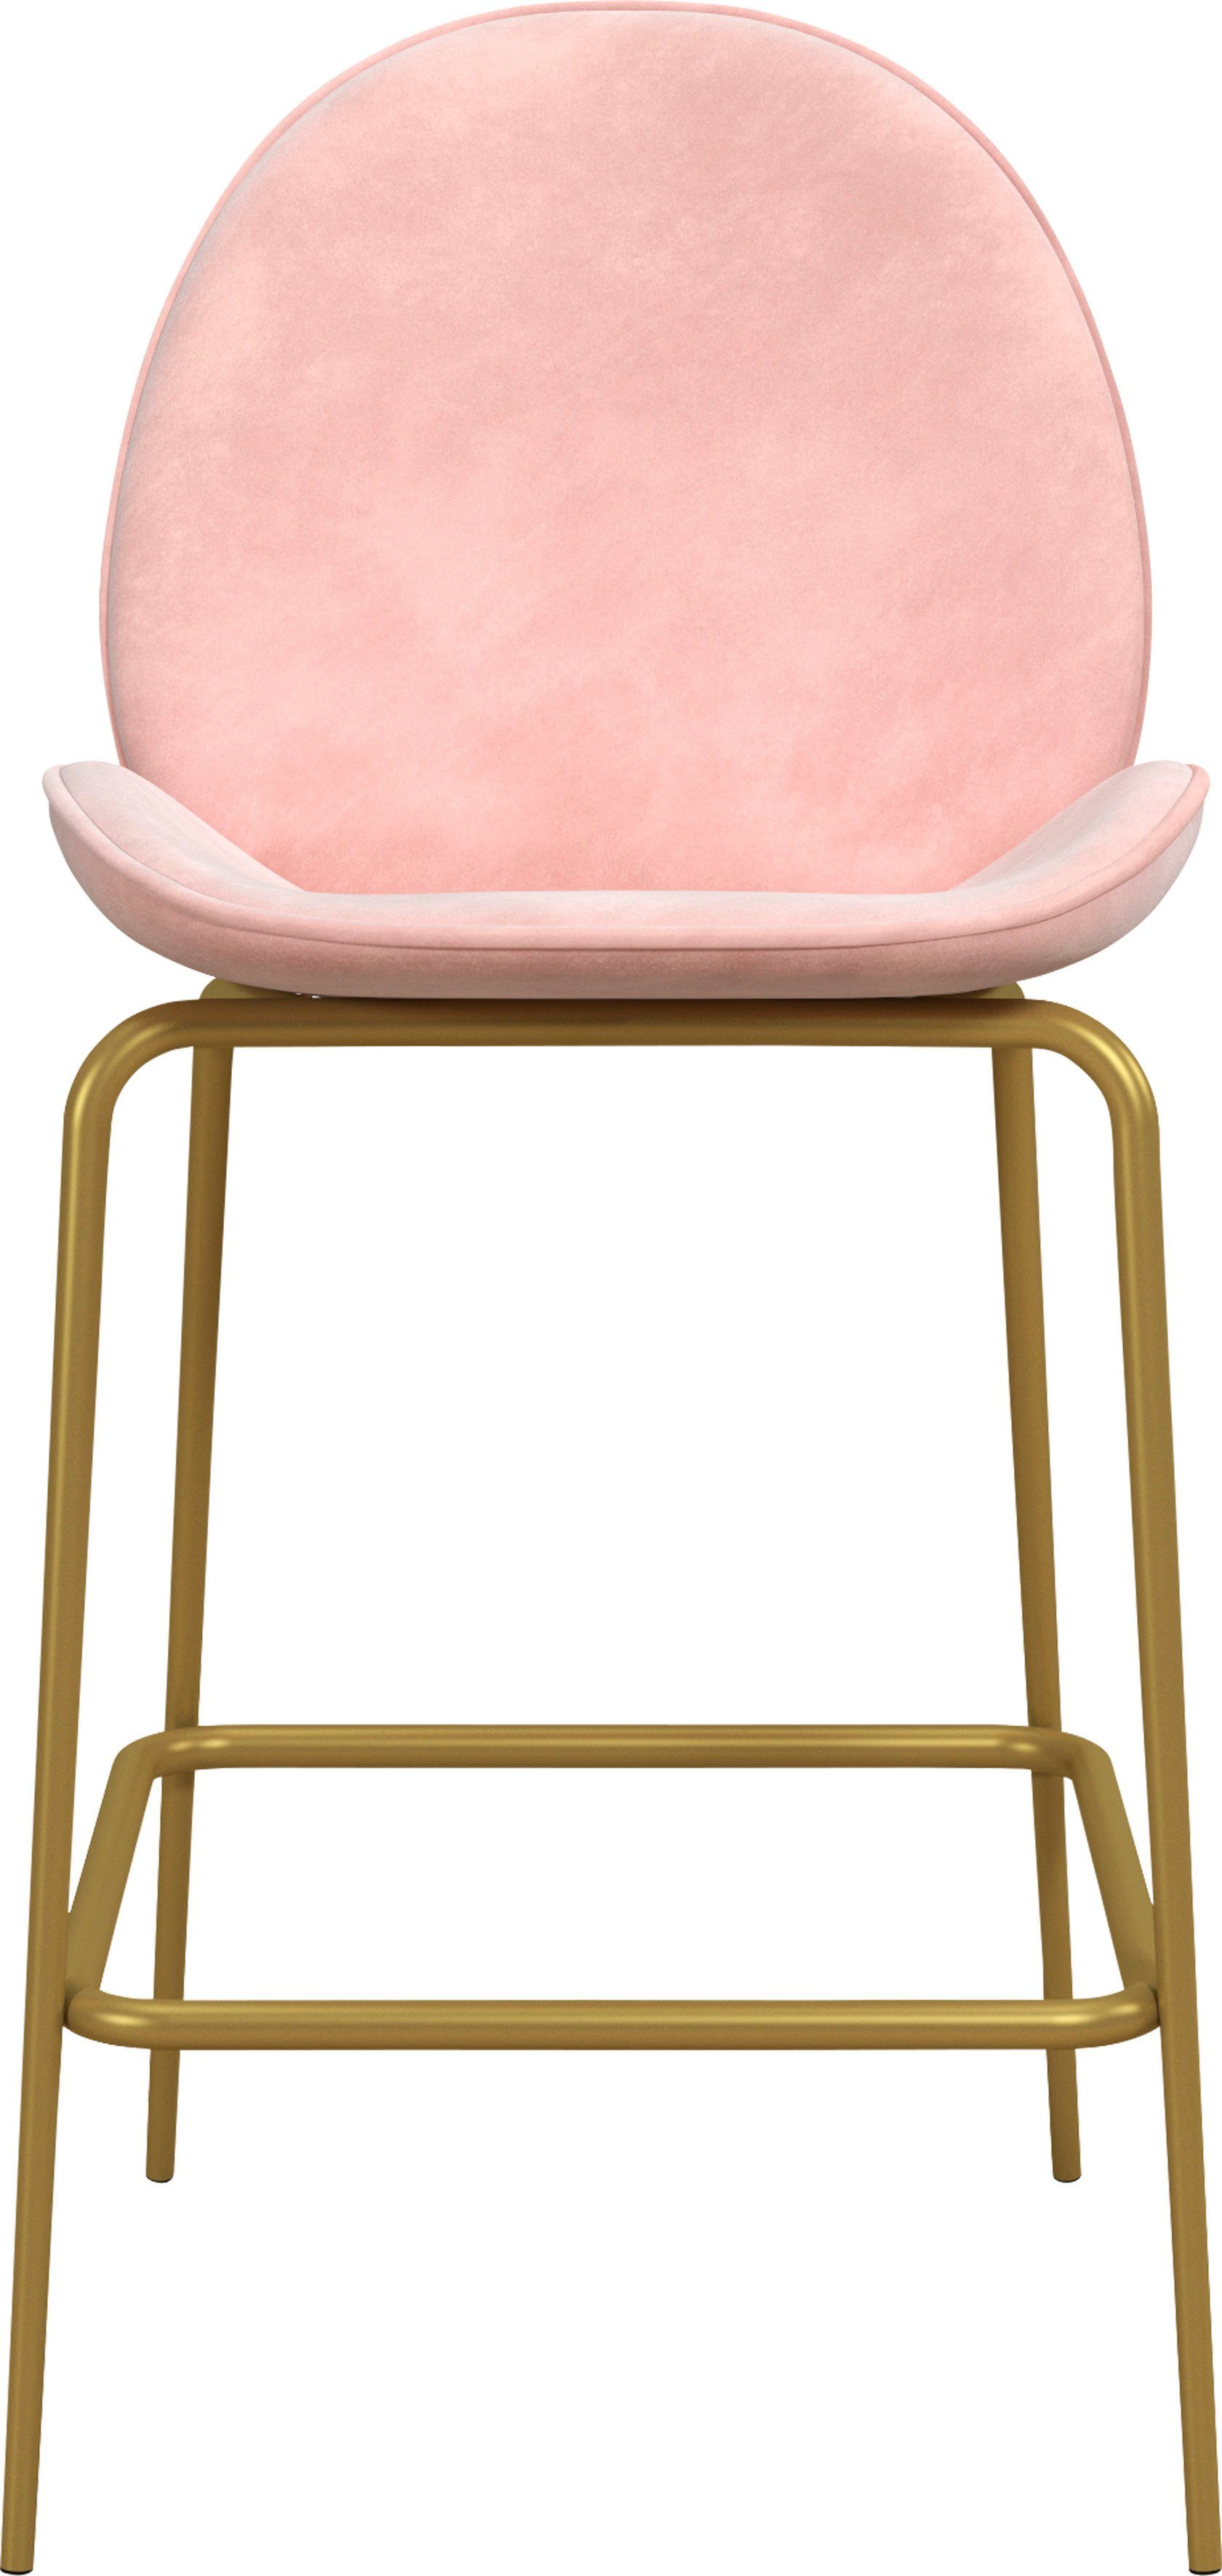 CosmoLiving by Cosmopolitan Barhocker Astor (1 St), Sitz und Rücken gepolstert, messingfarbenenes Gestell, Sitzhöhe 63 cm rosa